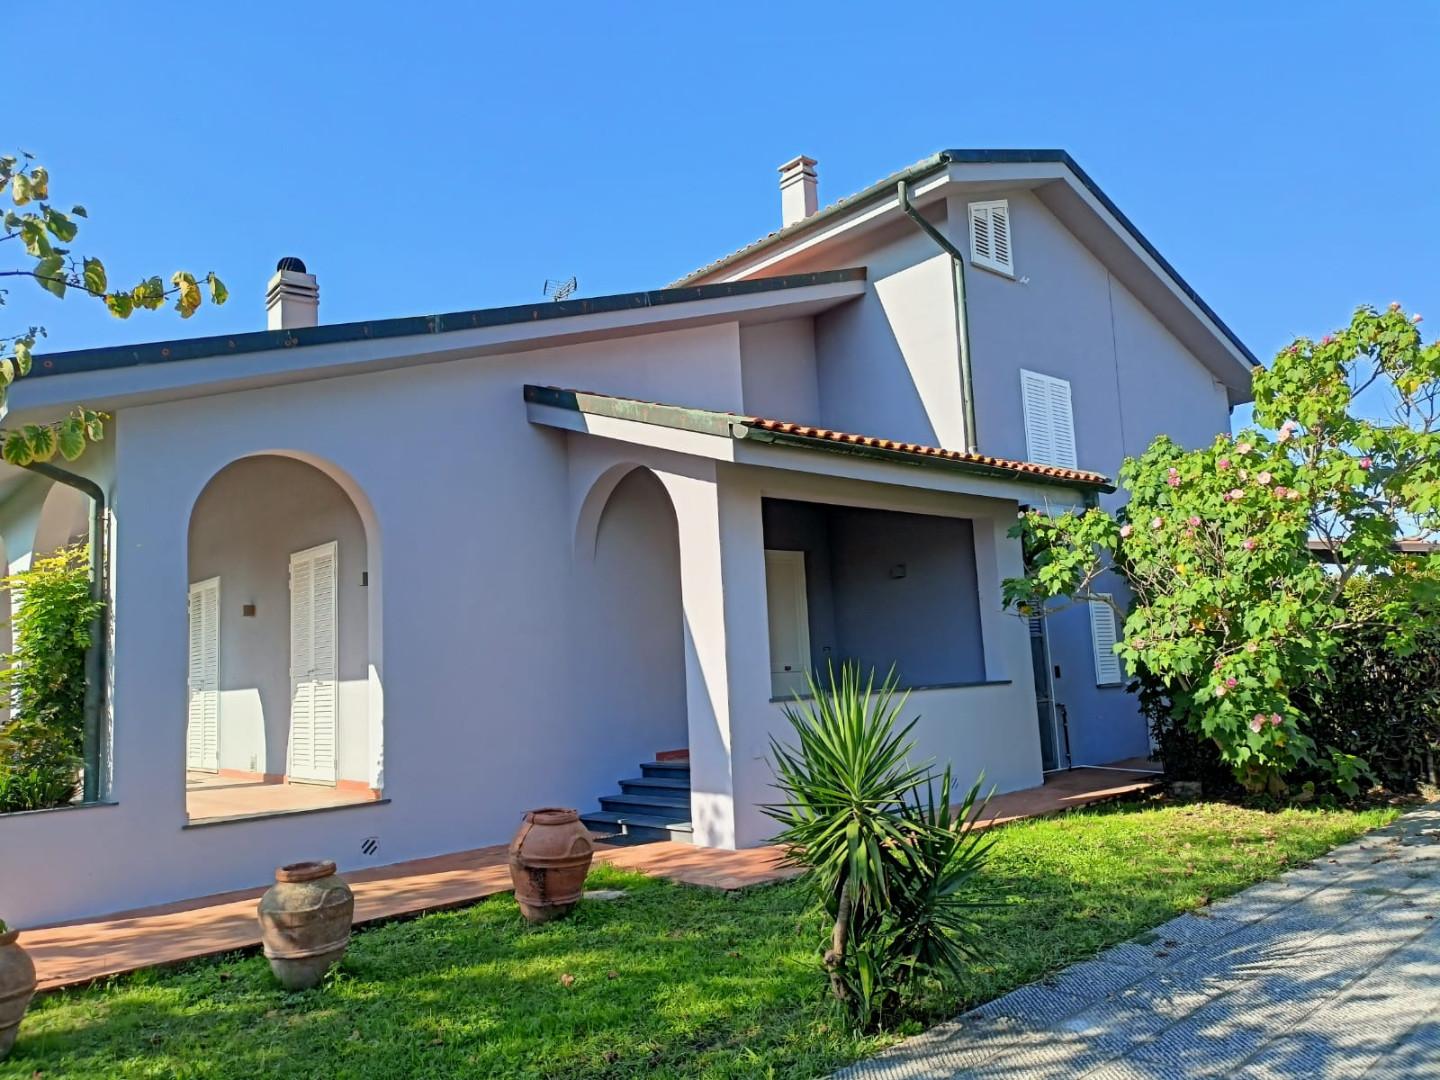 Villa in vendita a Cascina, 9 locali, prezzo € 450.000 | PortaleAgenzieImmobiliari.it